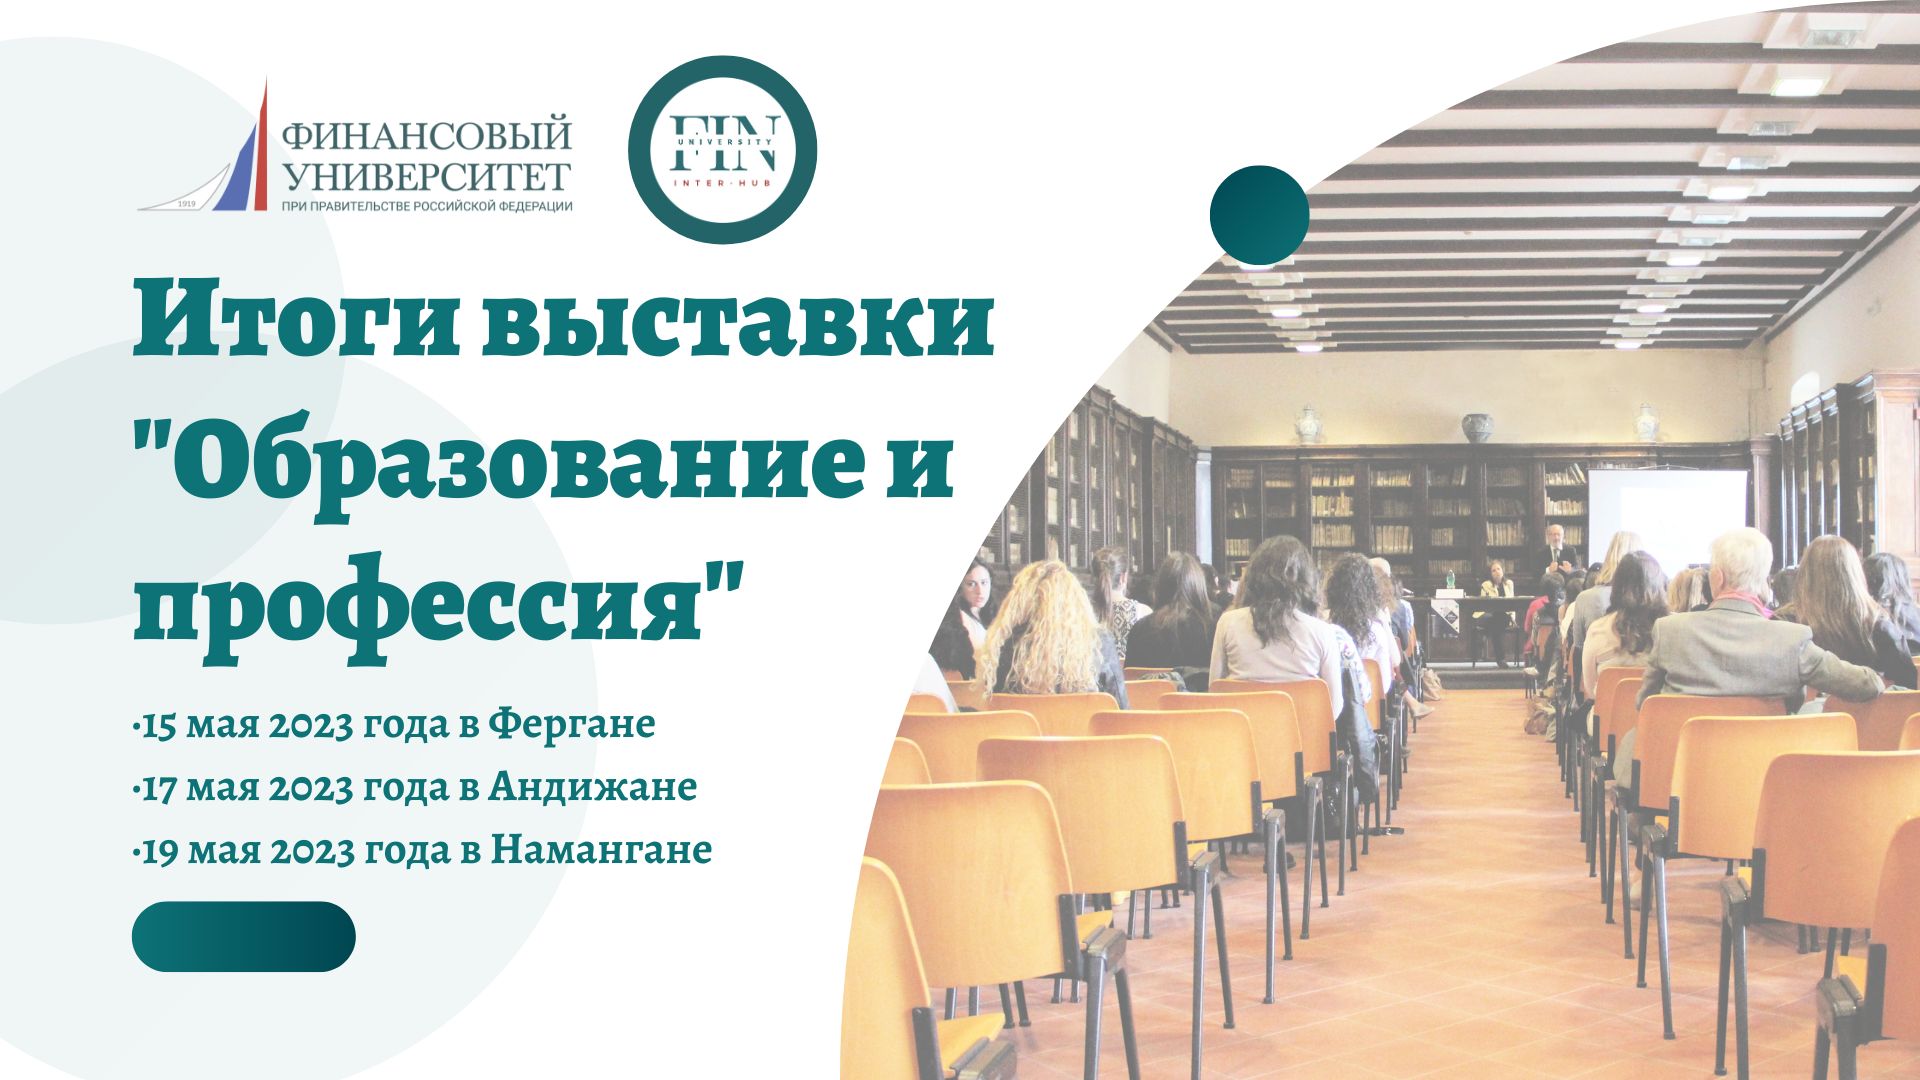 Финансовый университет принял очное участие в образовательной выставке «Образование и Профессия» в Узбекистане